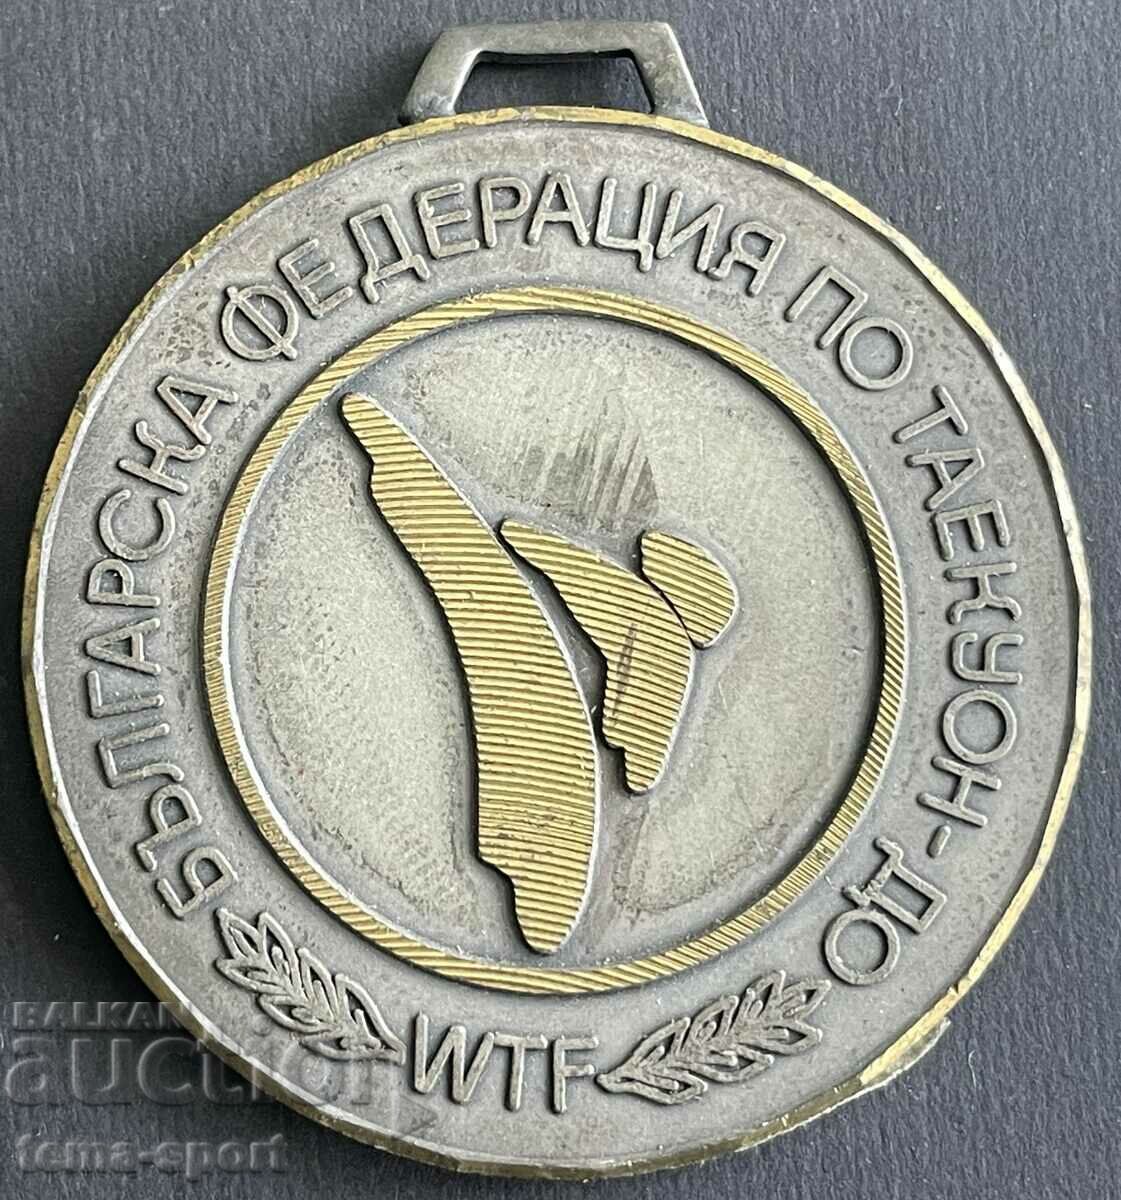 679 Bulgaria medal Bulgarian Tycoon Federation until 2000